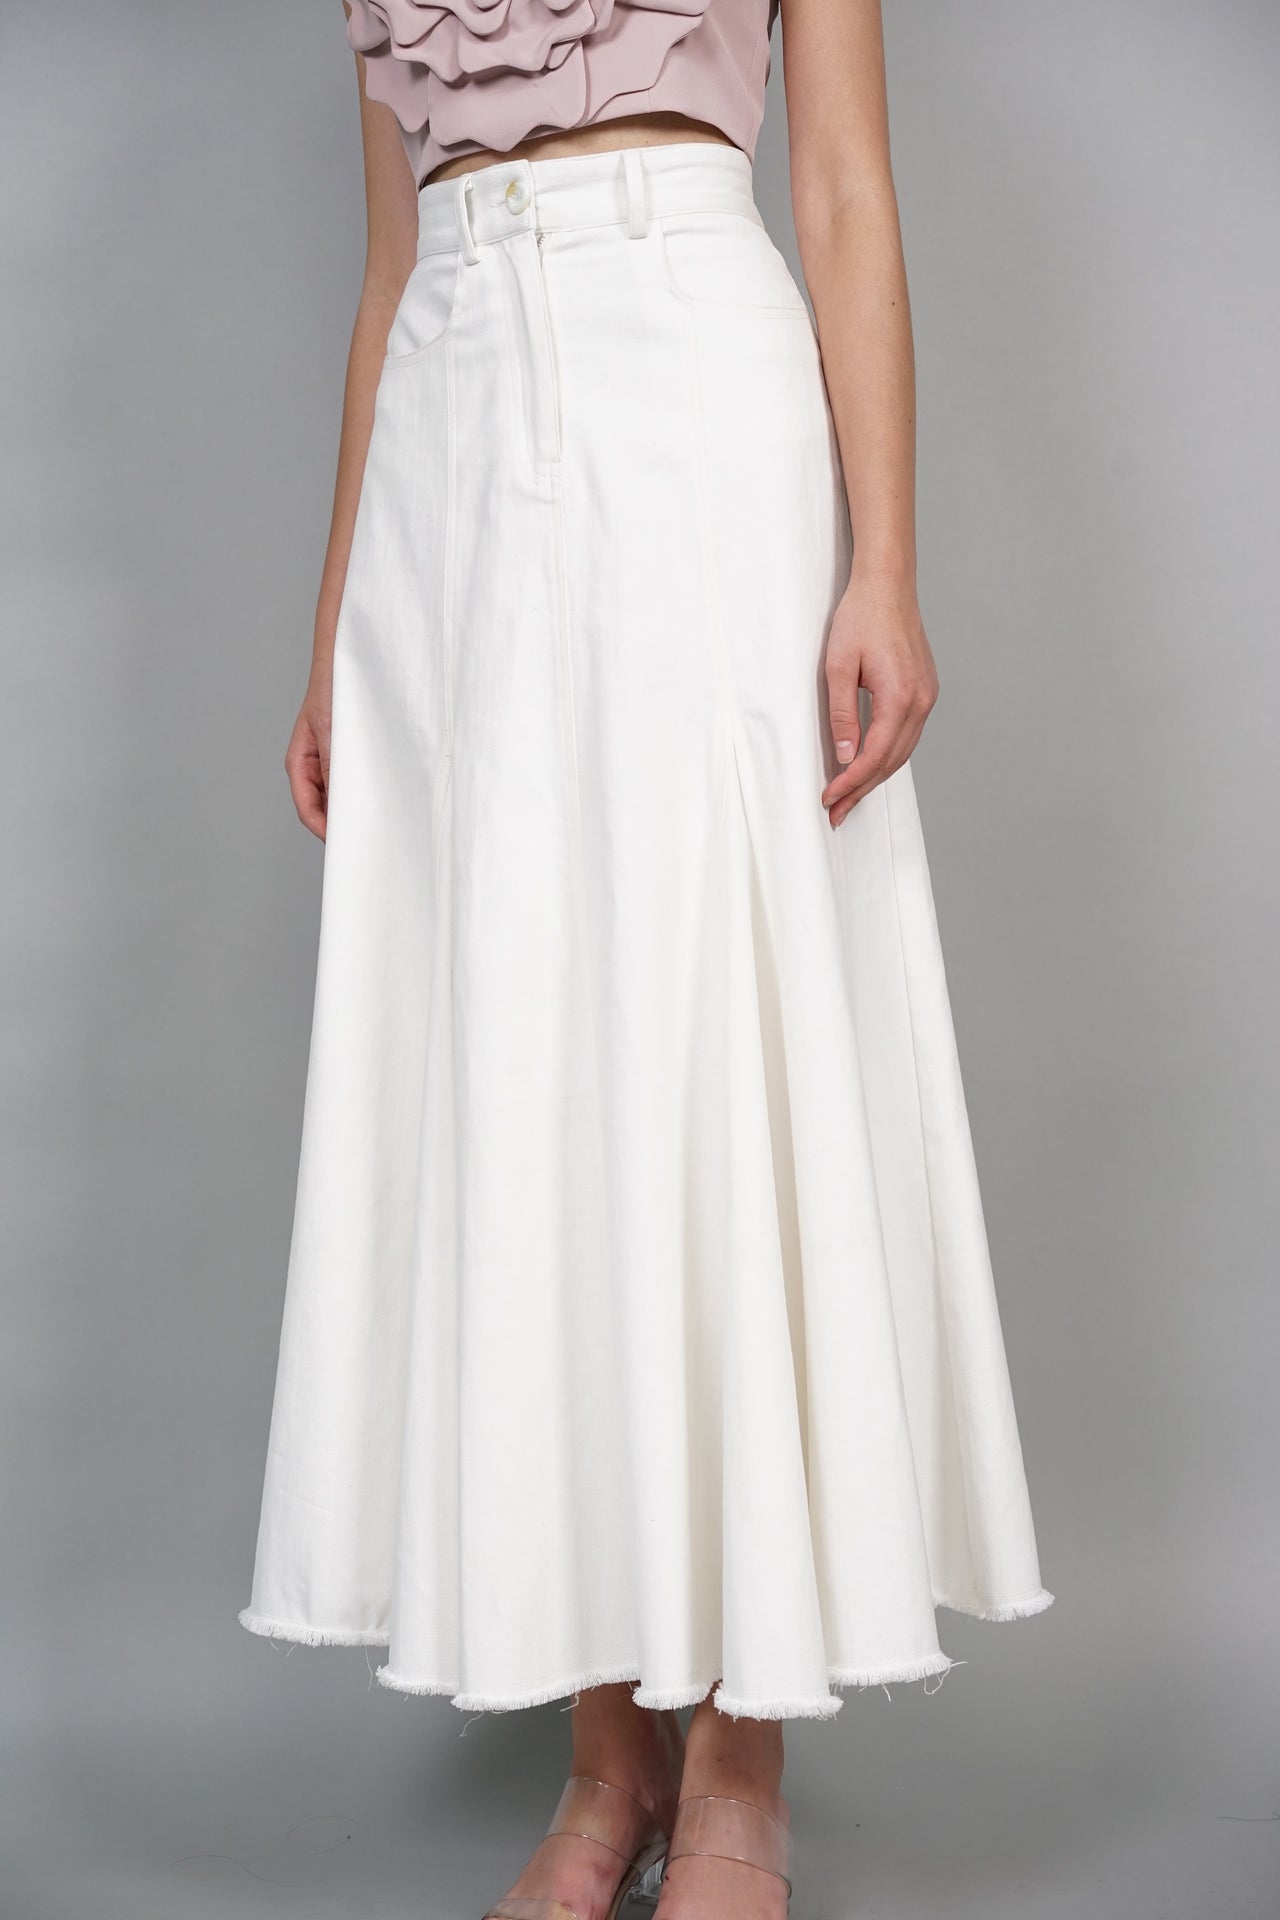 Denim Flared Skirt in White - Arriving soon